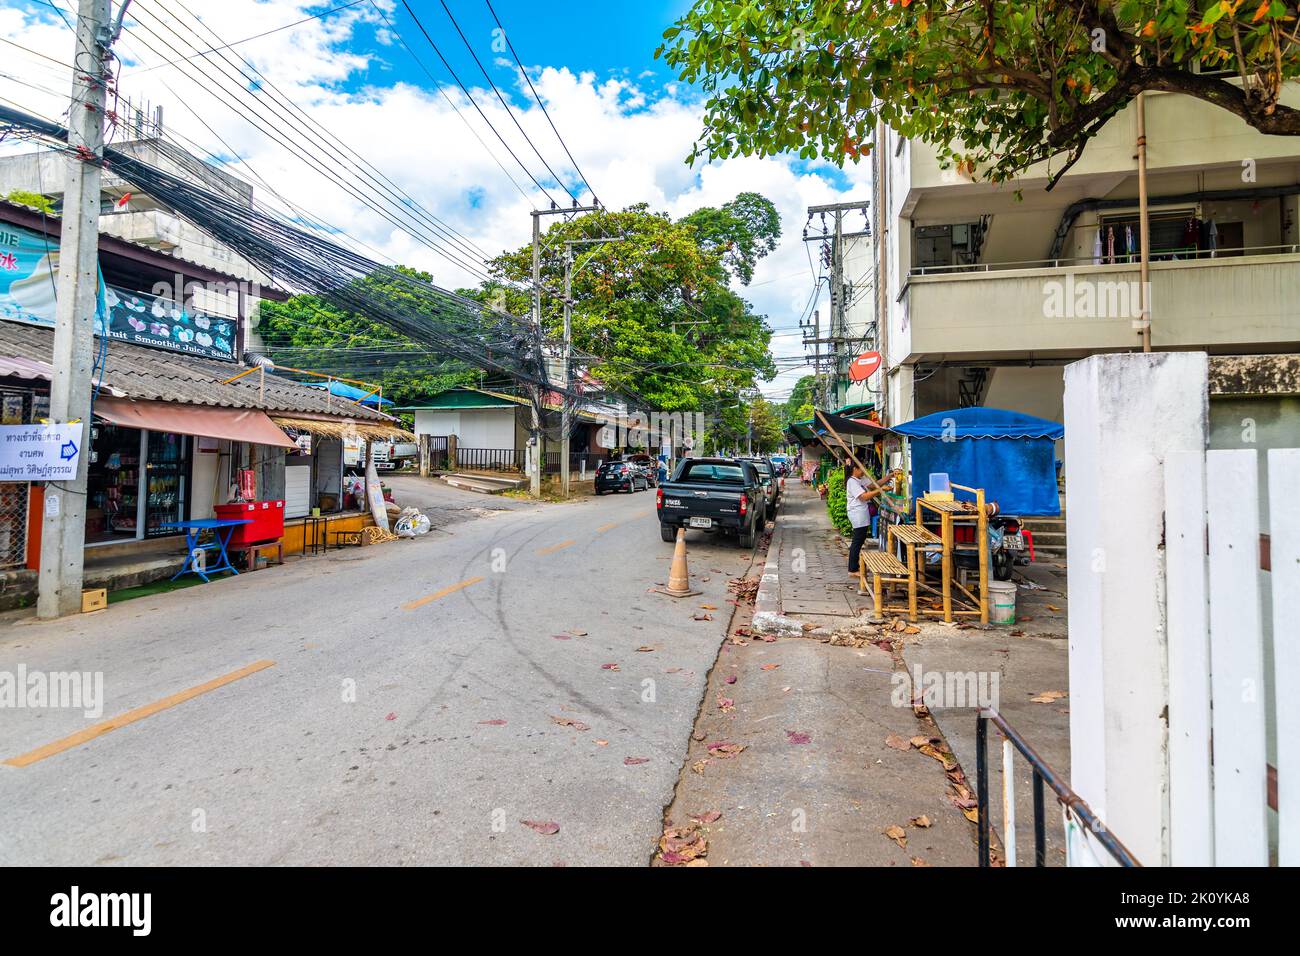 CHIANG mai, THAILANDIA - 4.11.2019: Strada nella città di Chiang mai. Vista sulla strada con auto, case in legno, alberi. Strada stretta nel mezzo. Foto Stock